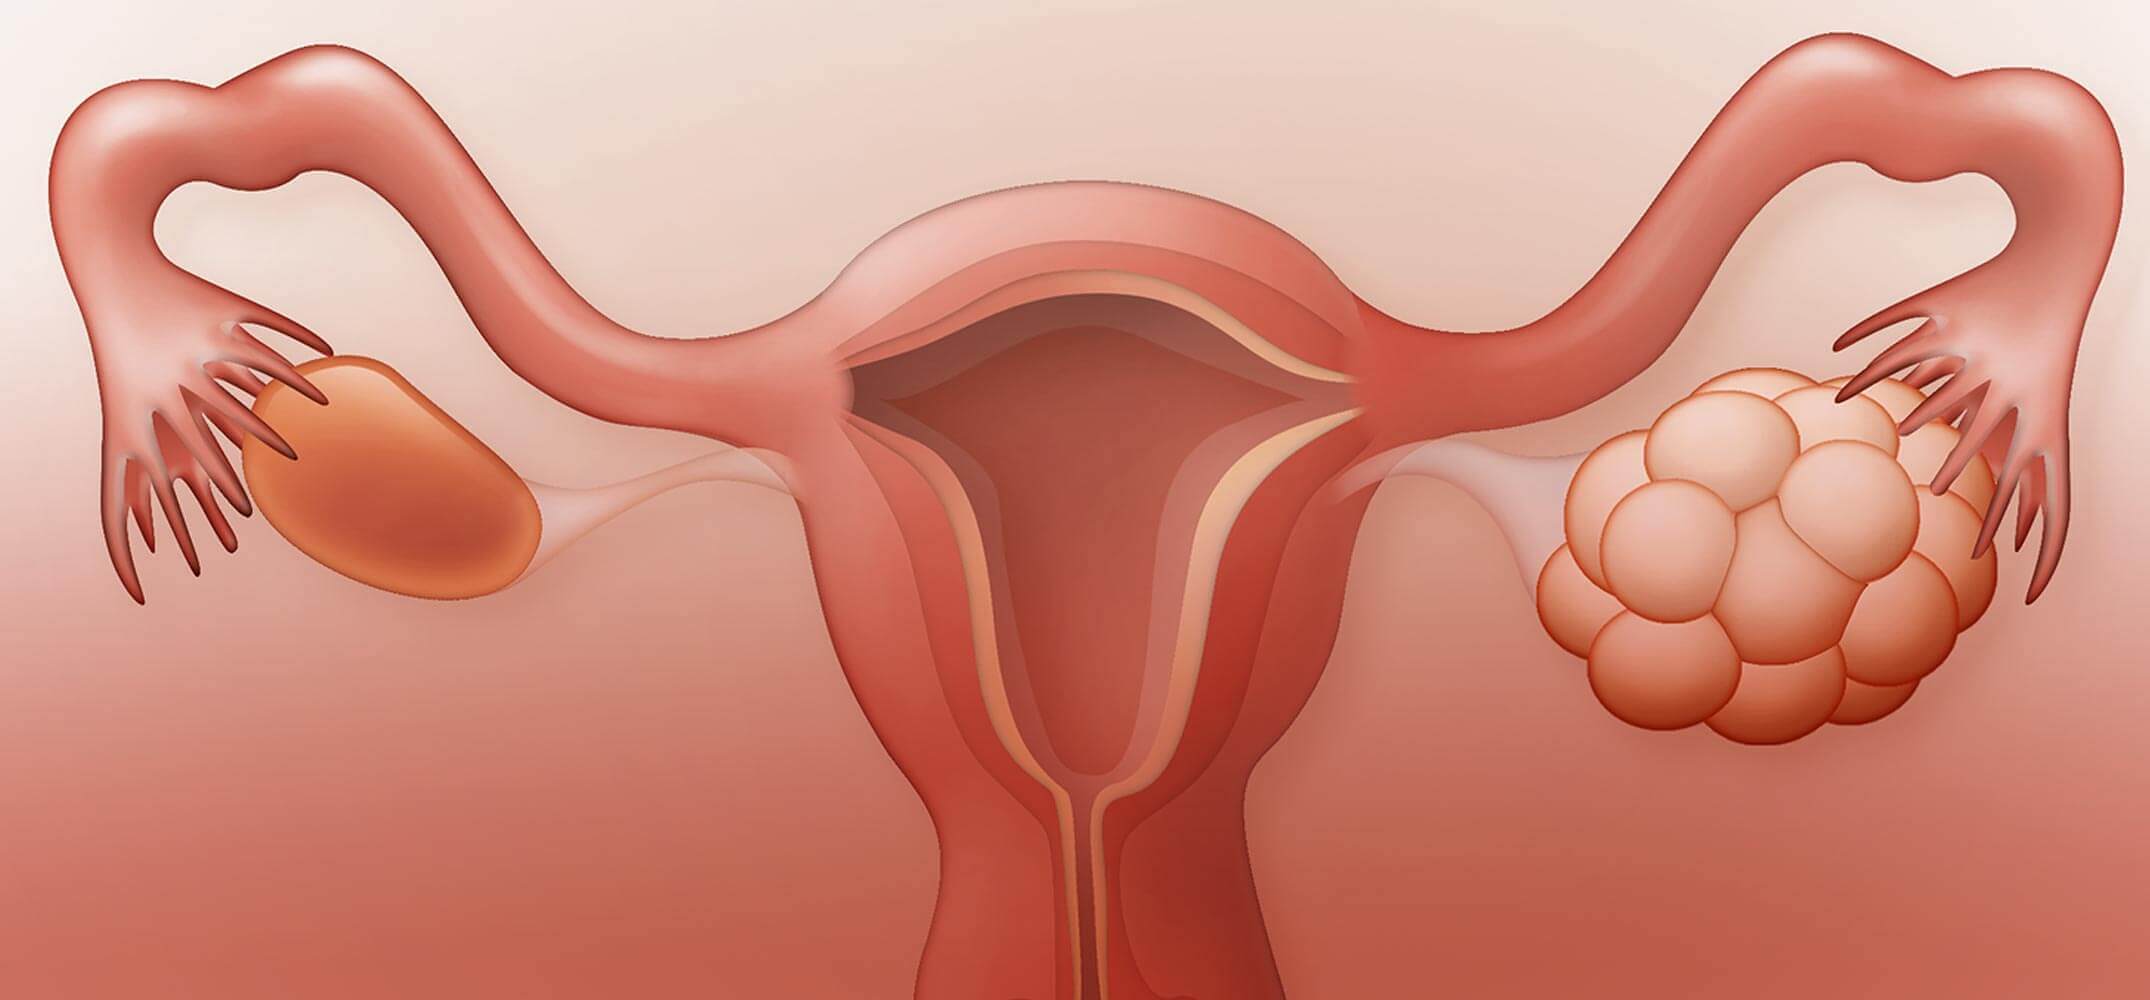 Дисфункция яичников - что нужно знать женщине о недуге